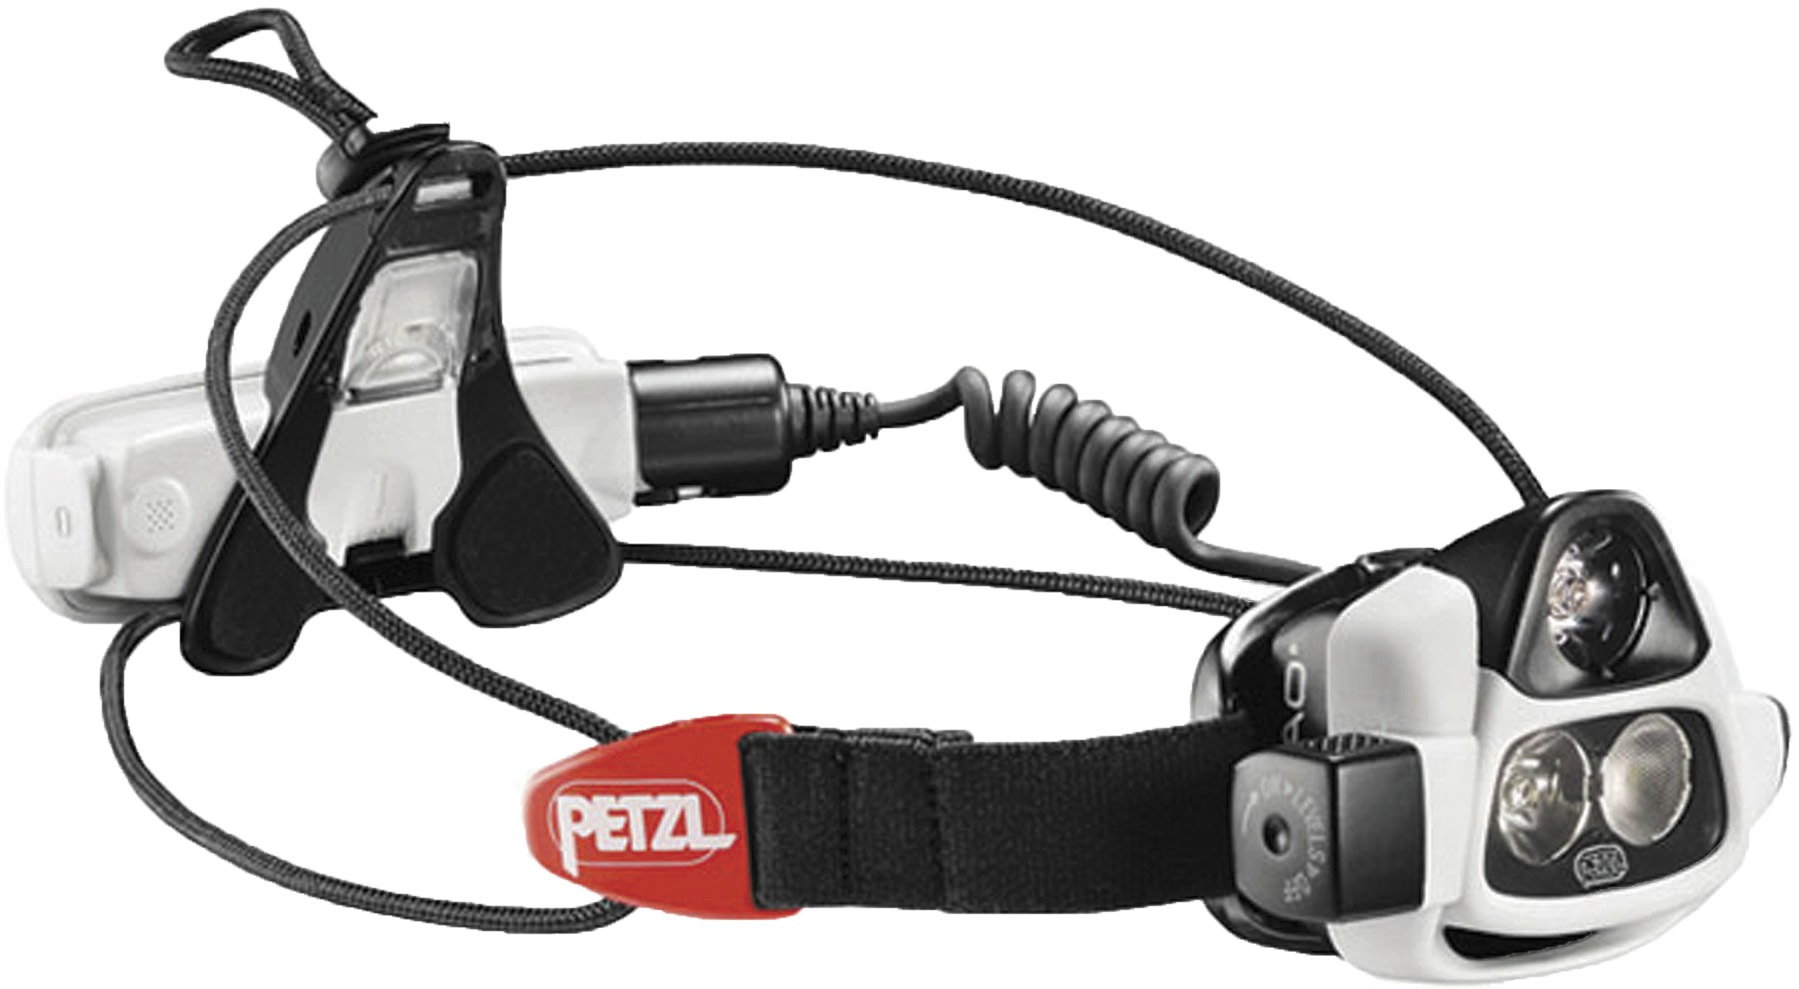 Petzl Headlamp Battery Size